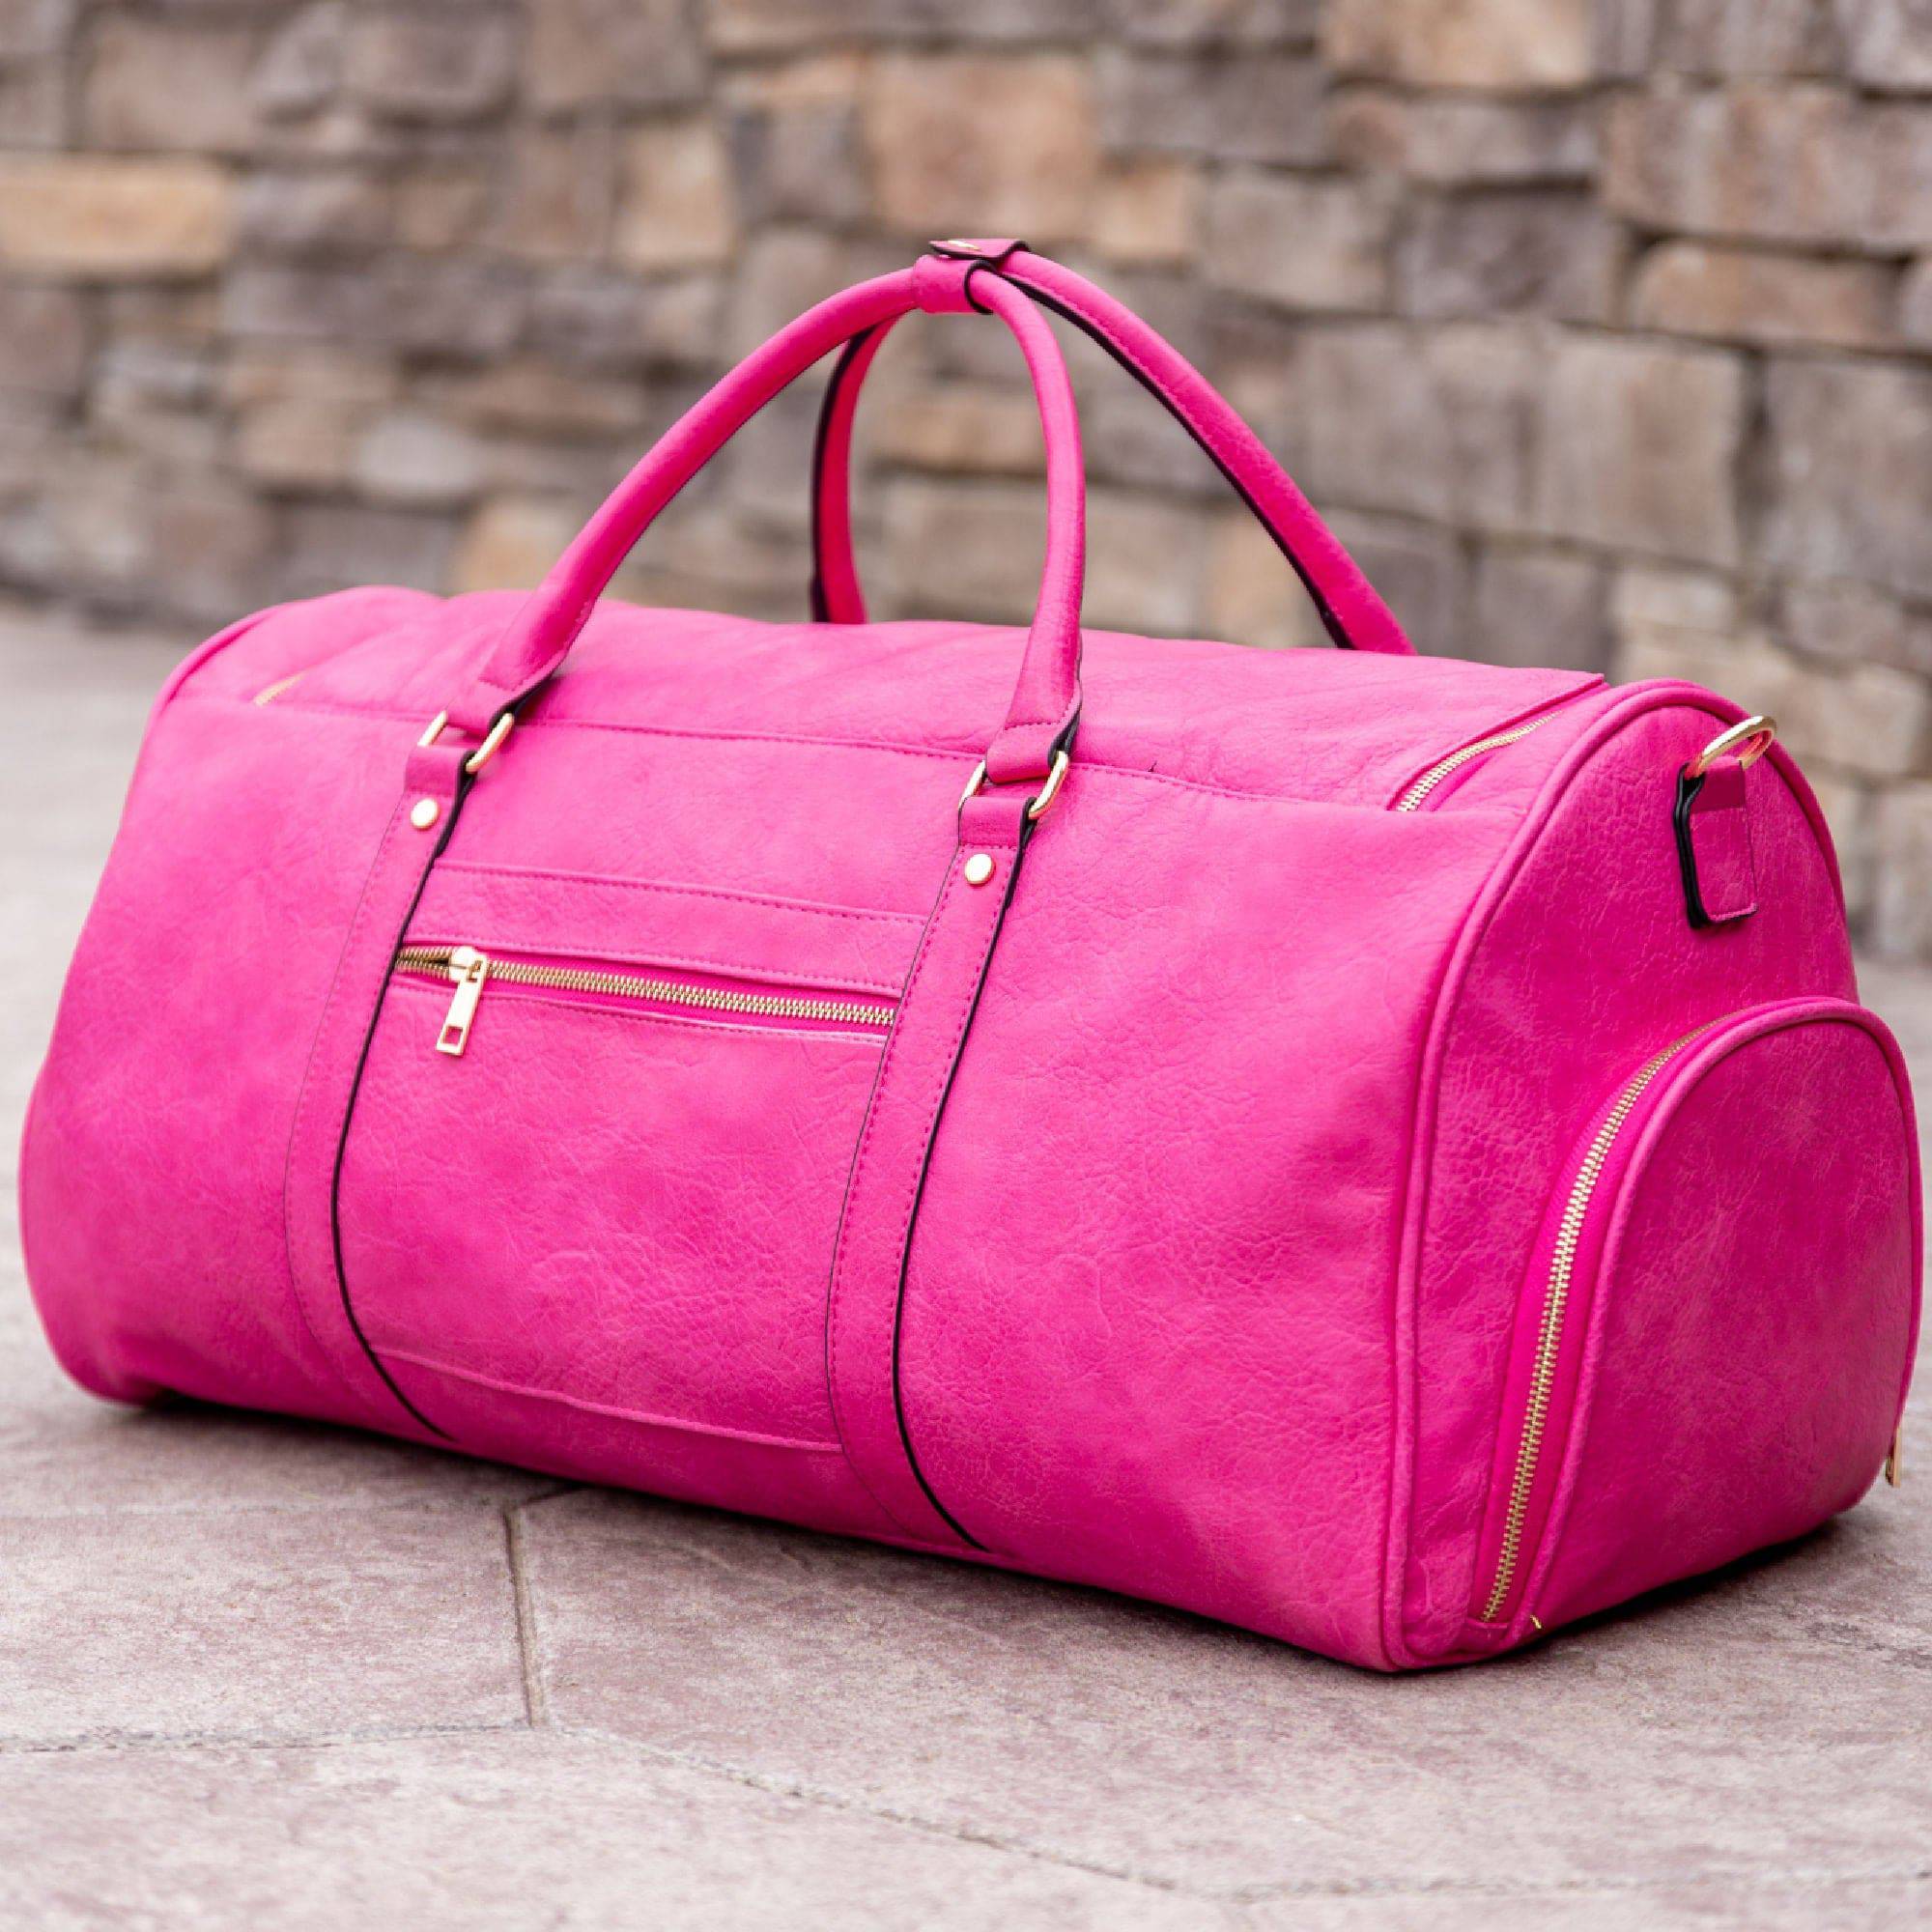 Pink Duffle Bag Angle